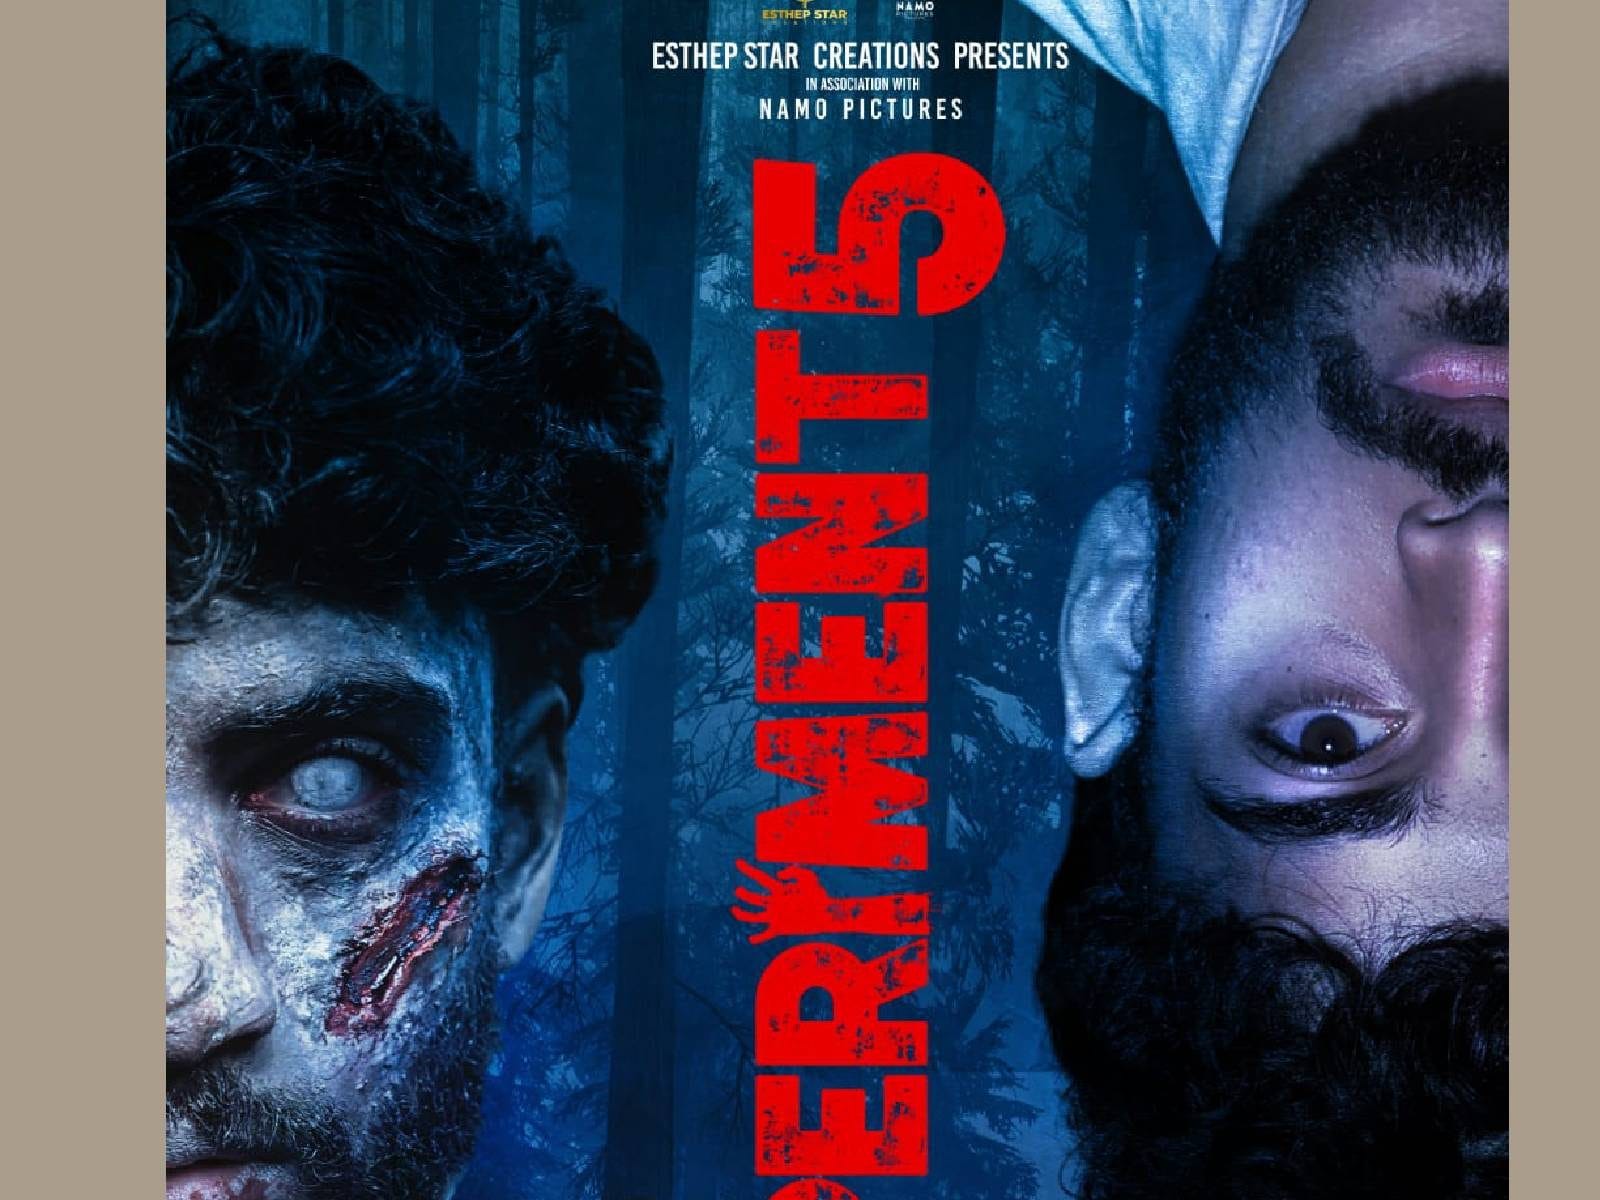 മലയാളത്തിൽ നിന്നുമൊരു സോംബി സിനിമ; 'എക്‌സ്പീരിമെന്റ് 5' ഫസ്റ്റ് ലുക്ക് പോസ്റ്റർ | Experiment 5 is a zombie film from Malayalam – News18 Malayalam